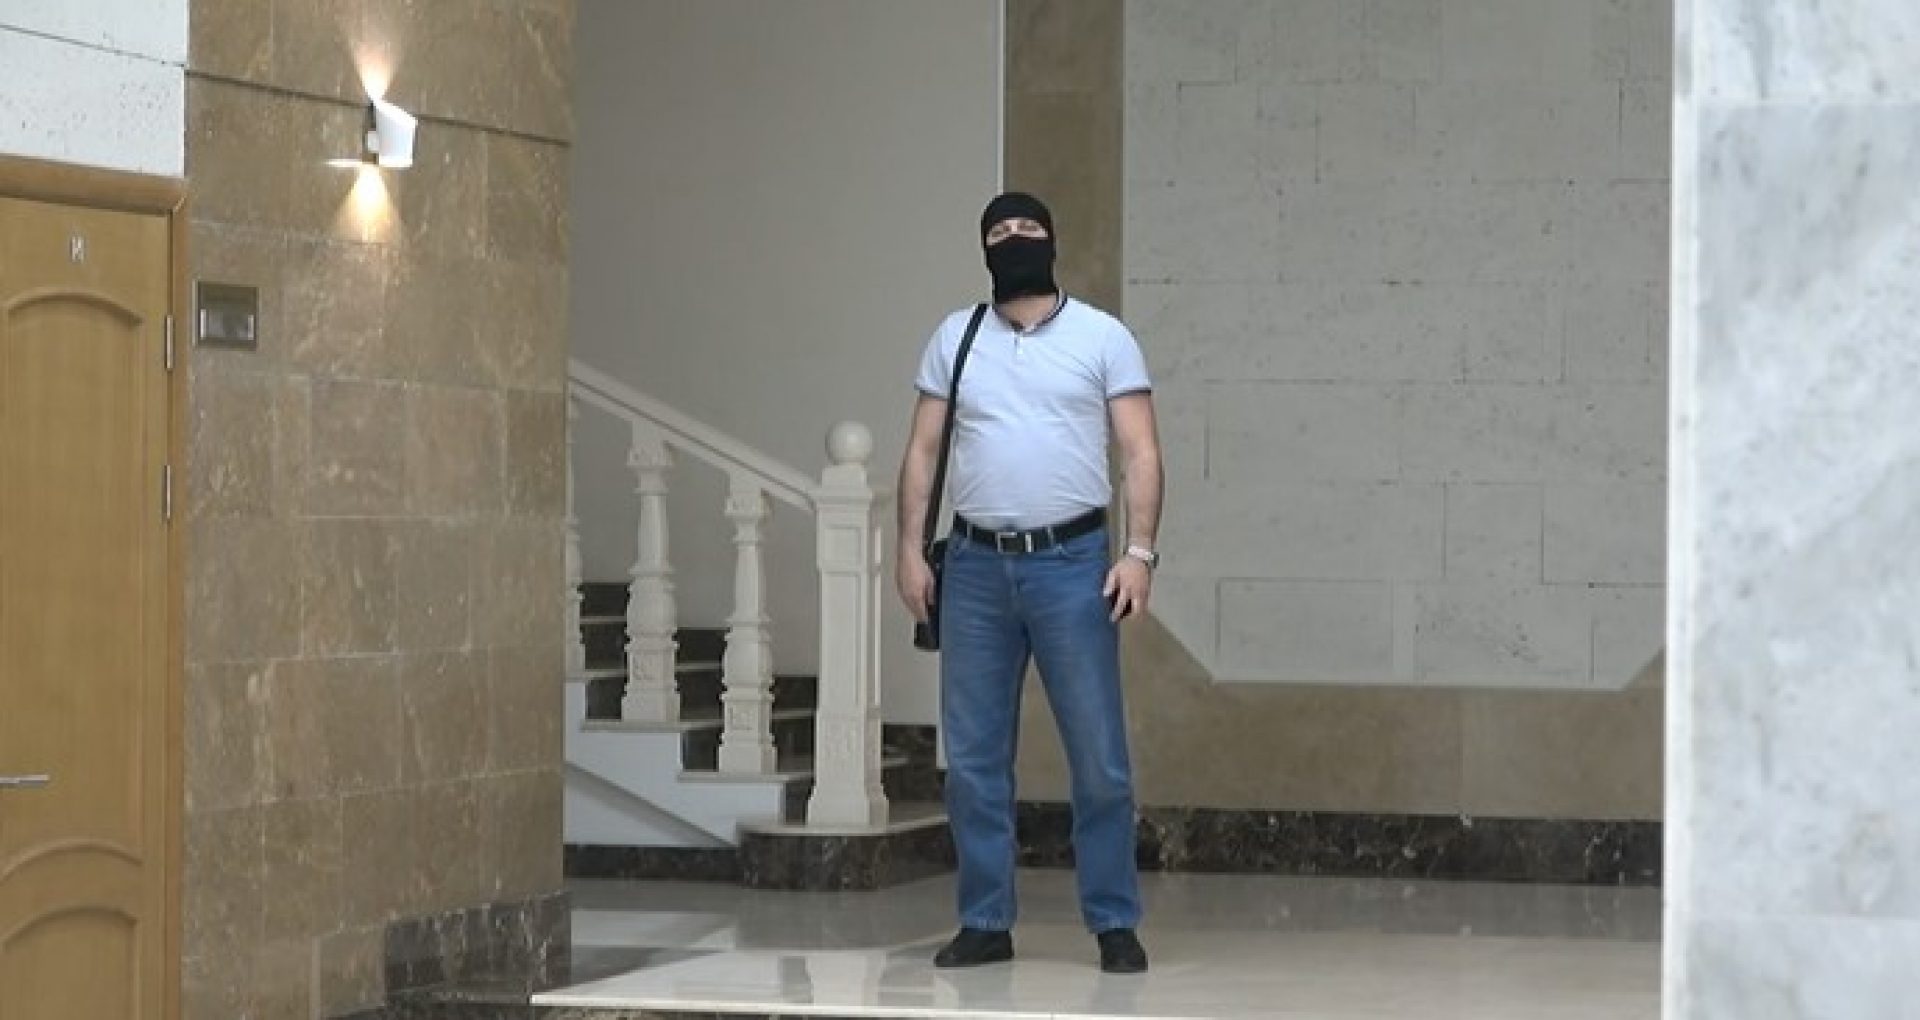 VIDEO/ Procurorul anticorupție care a dispus urmărirea penală împotriva lui Stoianoglo a venit cu mascații de la SIS la PG, înainte de briefingul procurorului general